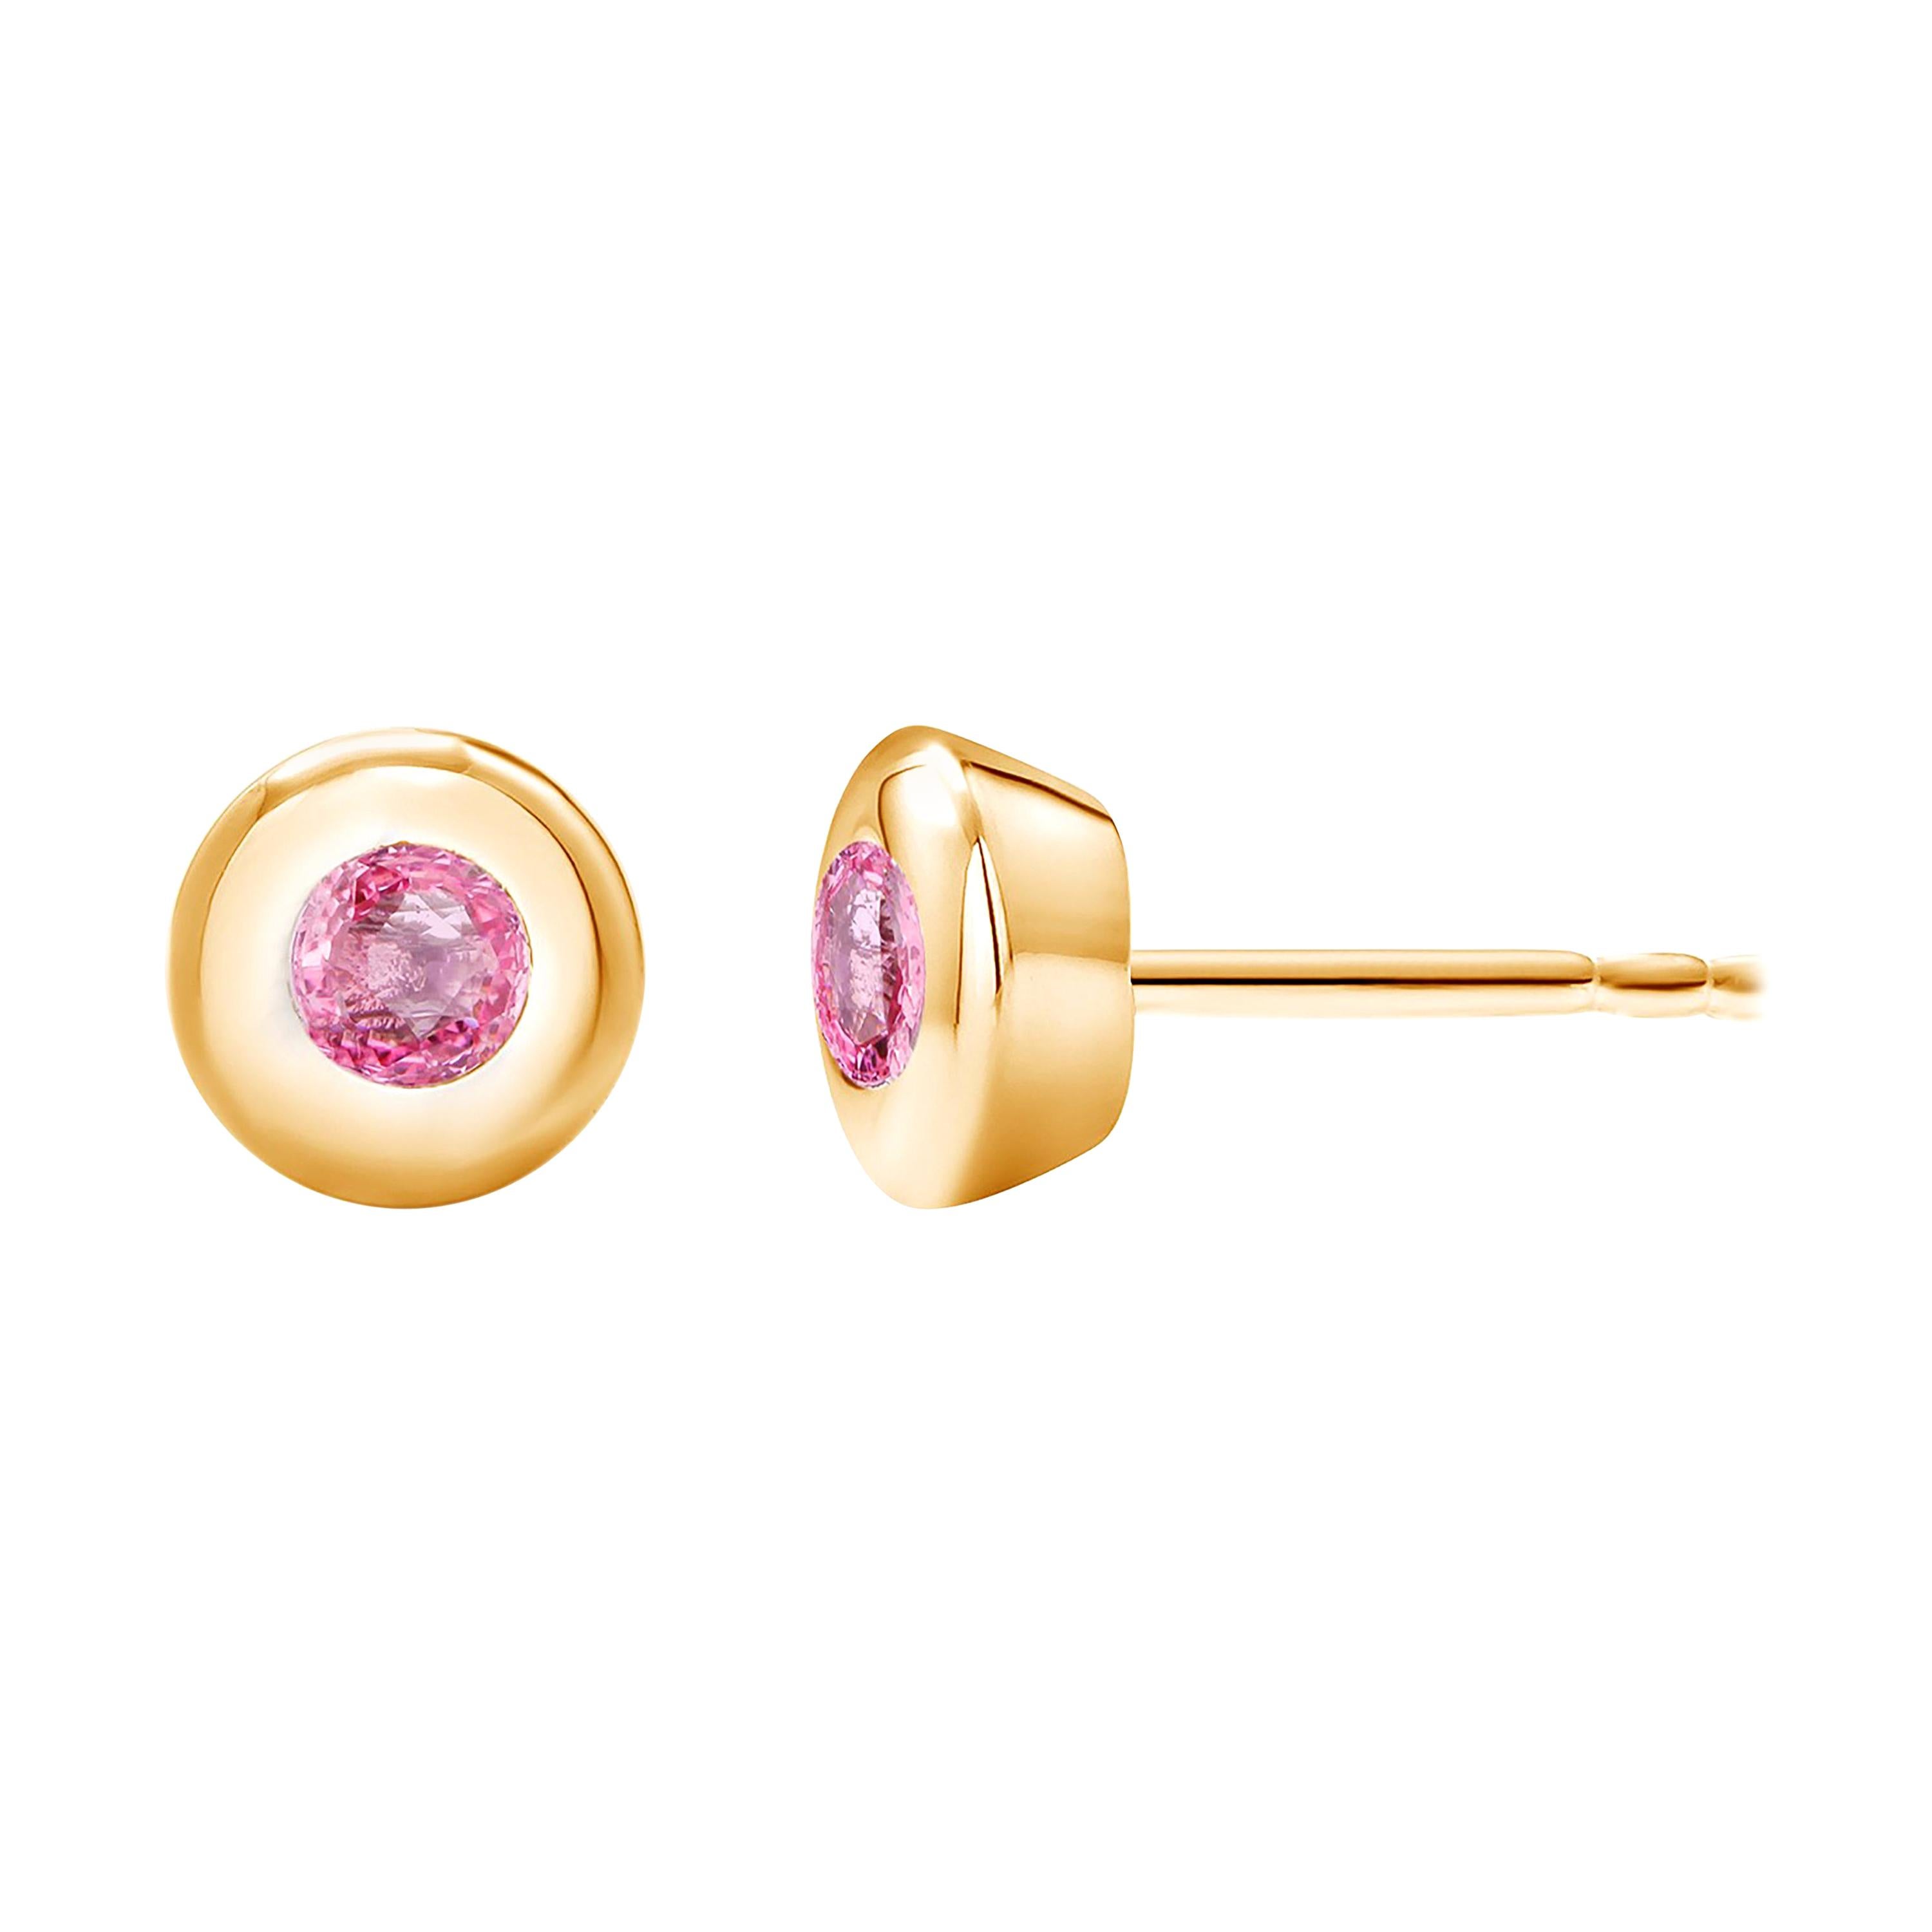 14 Karat Yellow Gold Bezel Set Pink Sapphire Stud Earrings Weighing 0.30 Carat